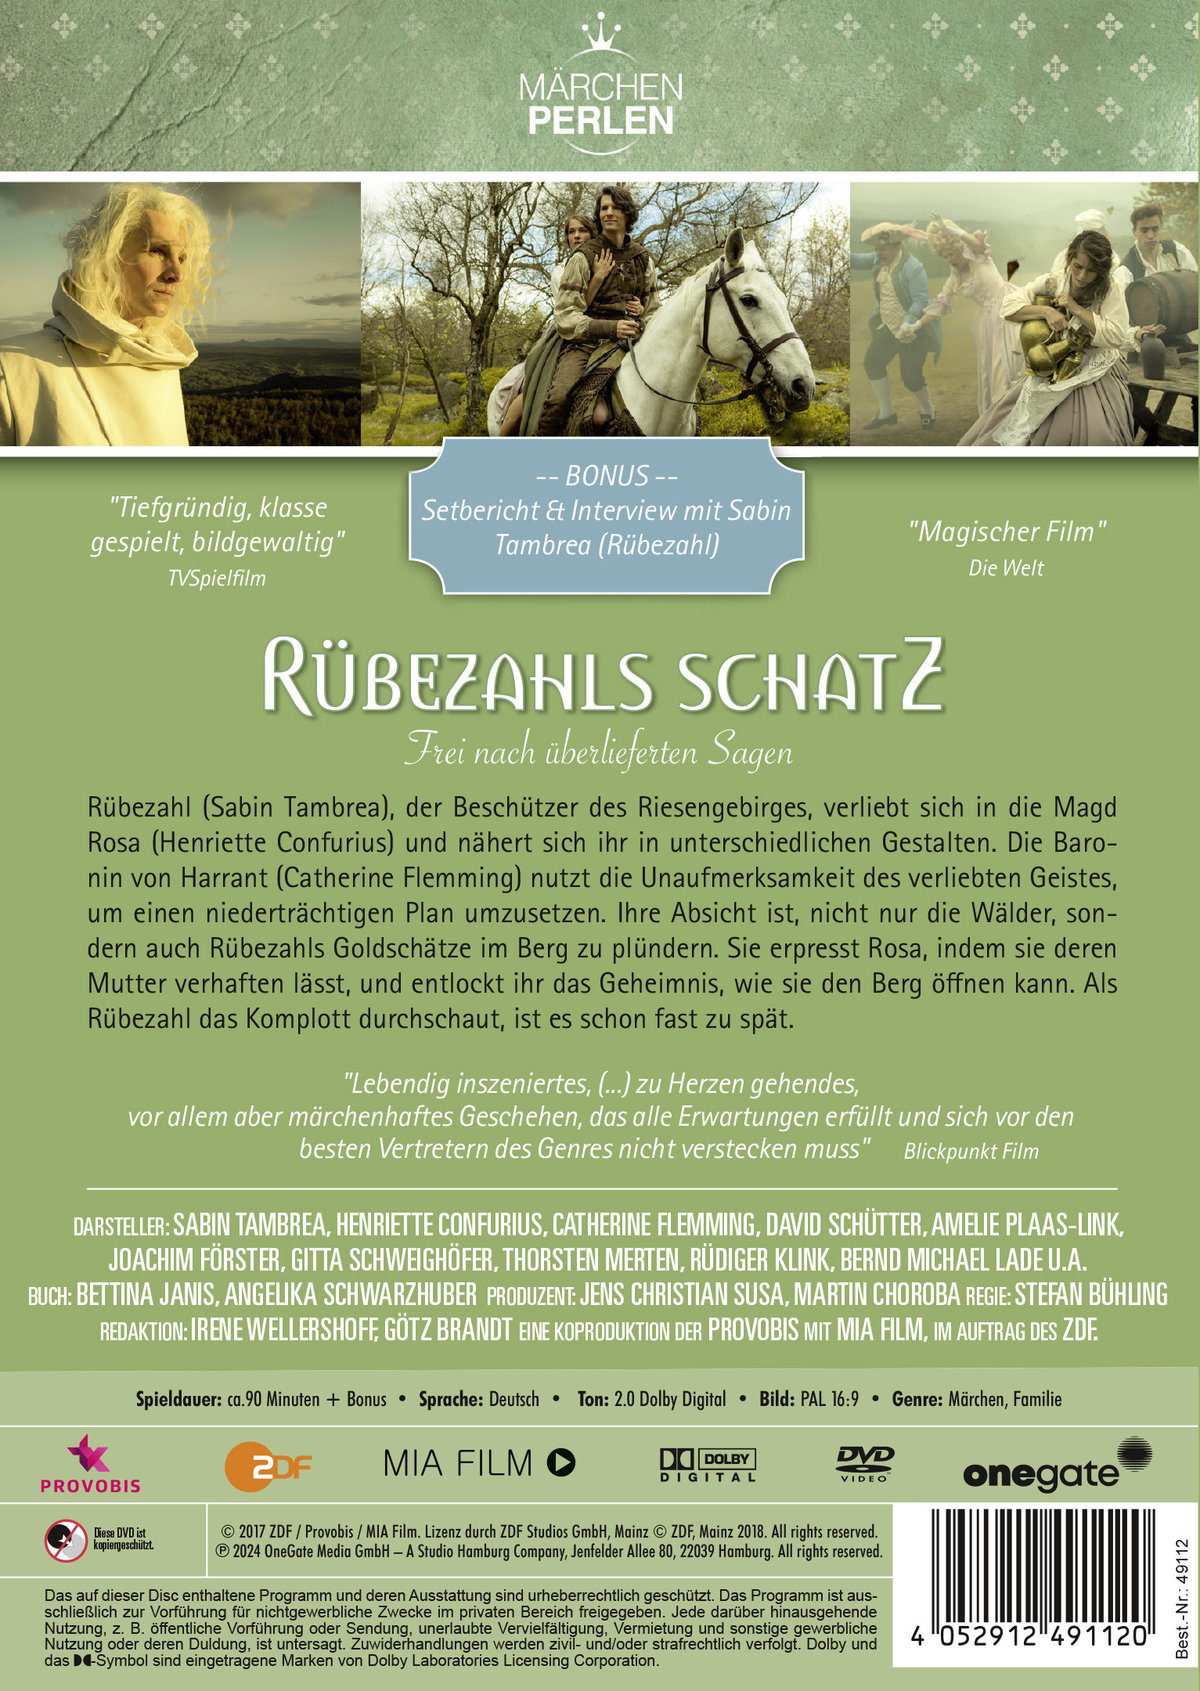 Märchenperlen: Rübezahls Schatz  (DVD)